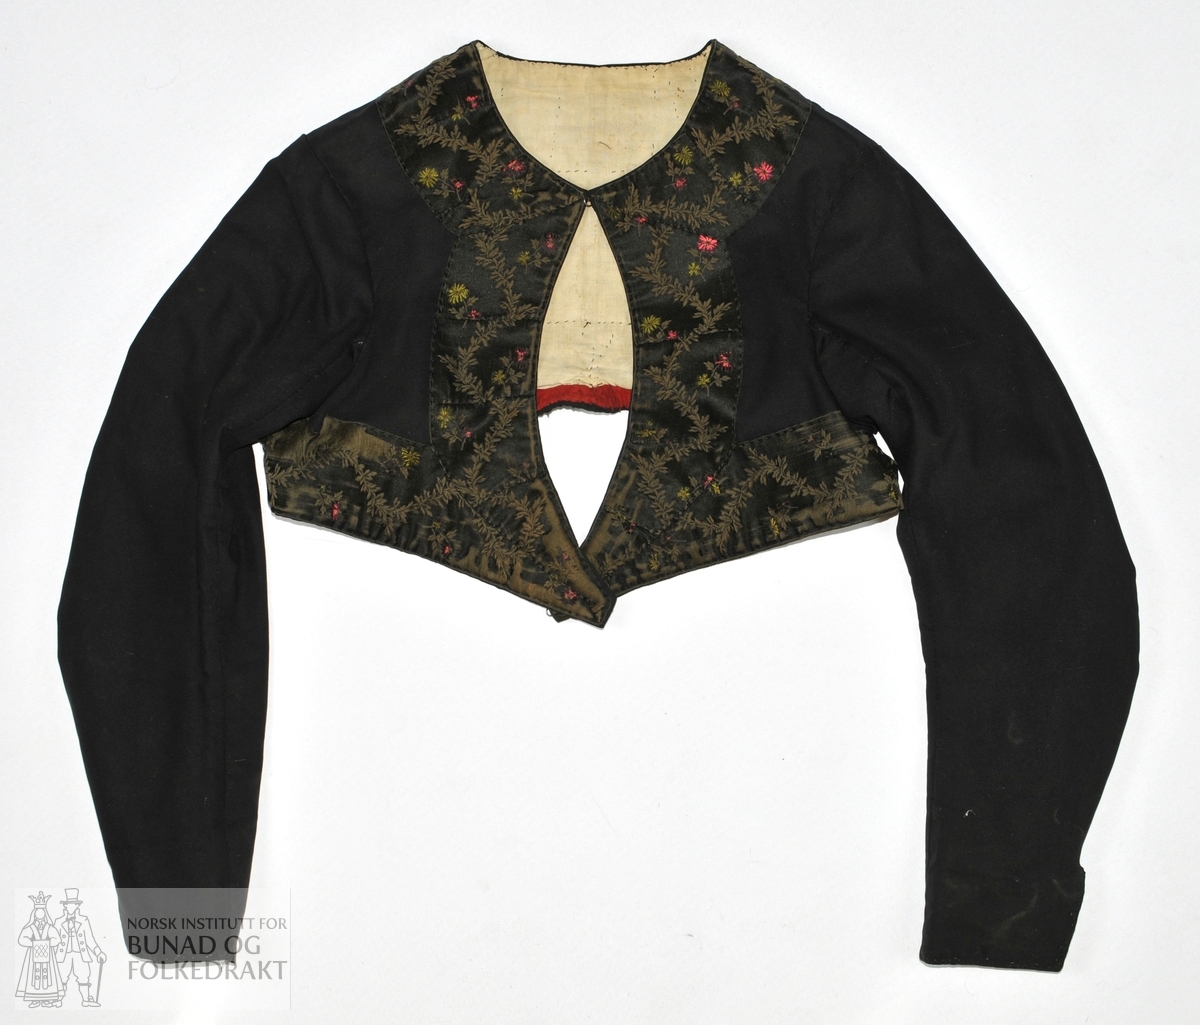 Kvinnetrøye i svart klede med fôr i ubleket bomull (toskaft). Trøya er kanta med et 7 cm bredt svart silkeband med mønster i rødt, grønt og brunt. Nederst på ermene 7 cm splitt. Sjå skisse.